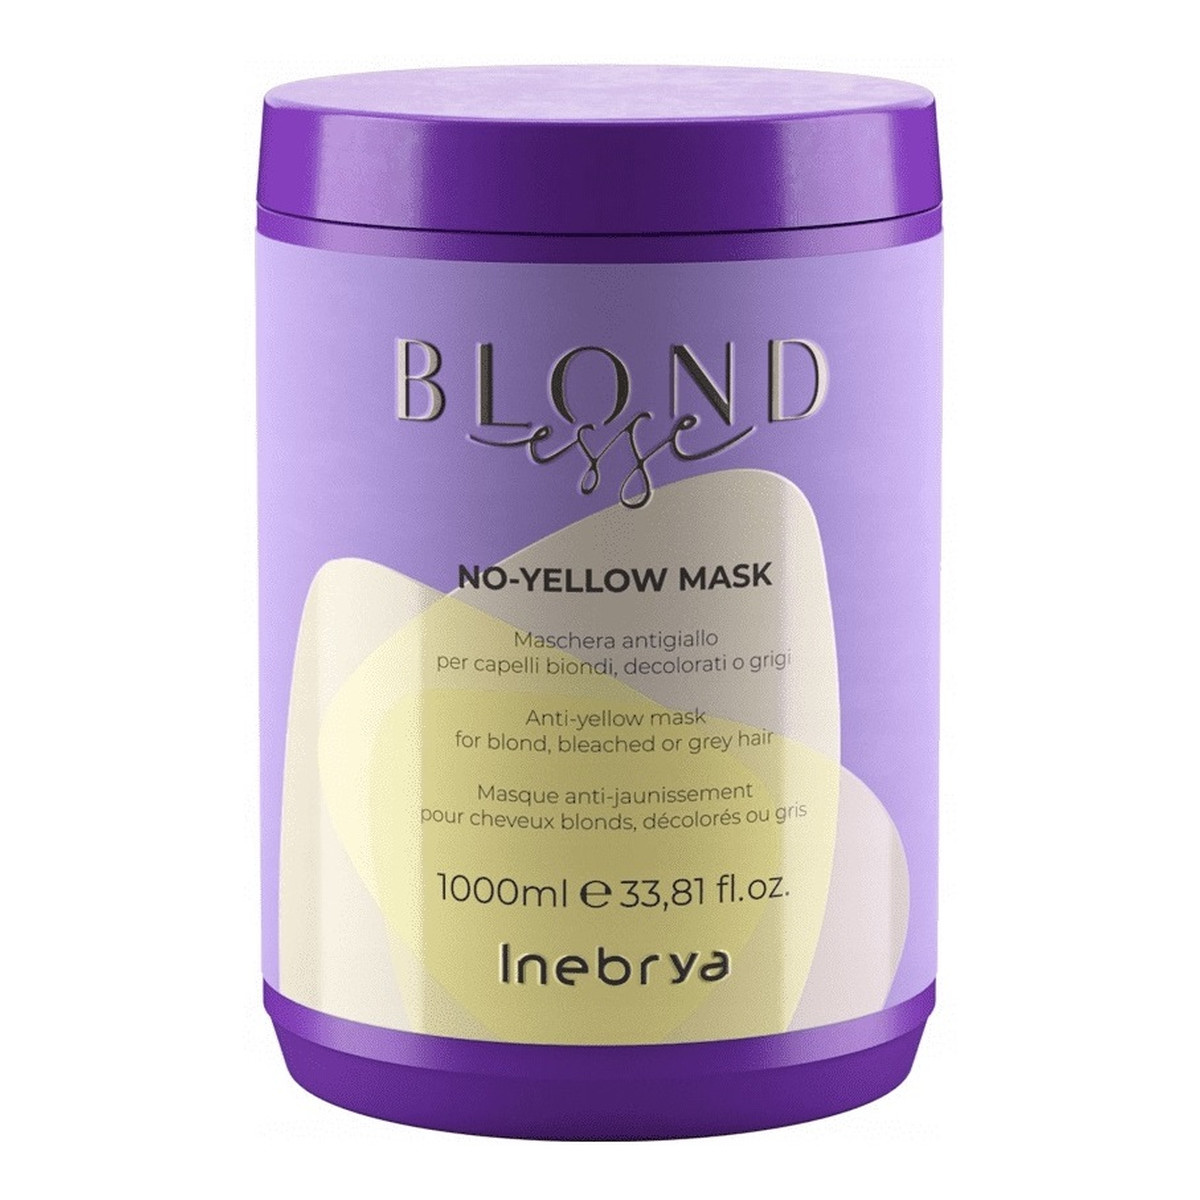 Inebrya Blondesse no-yellow mask maska do włosów blond rozjaśnianych i siwych 1000ml